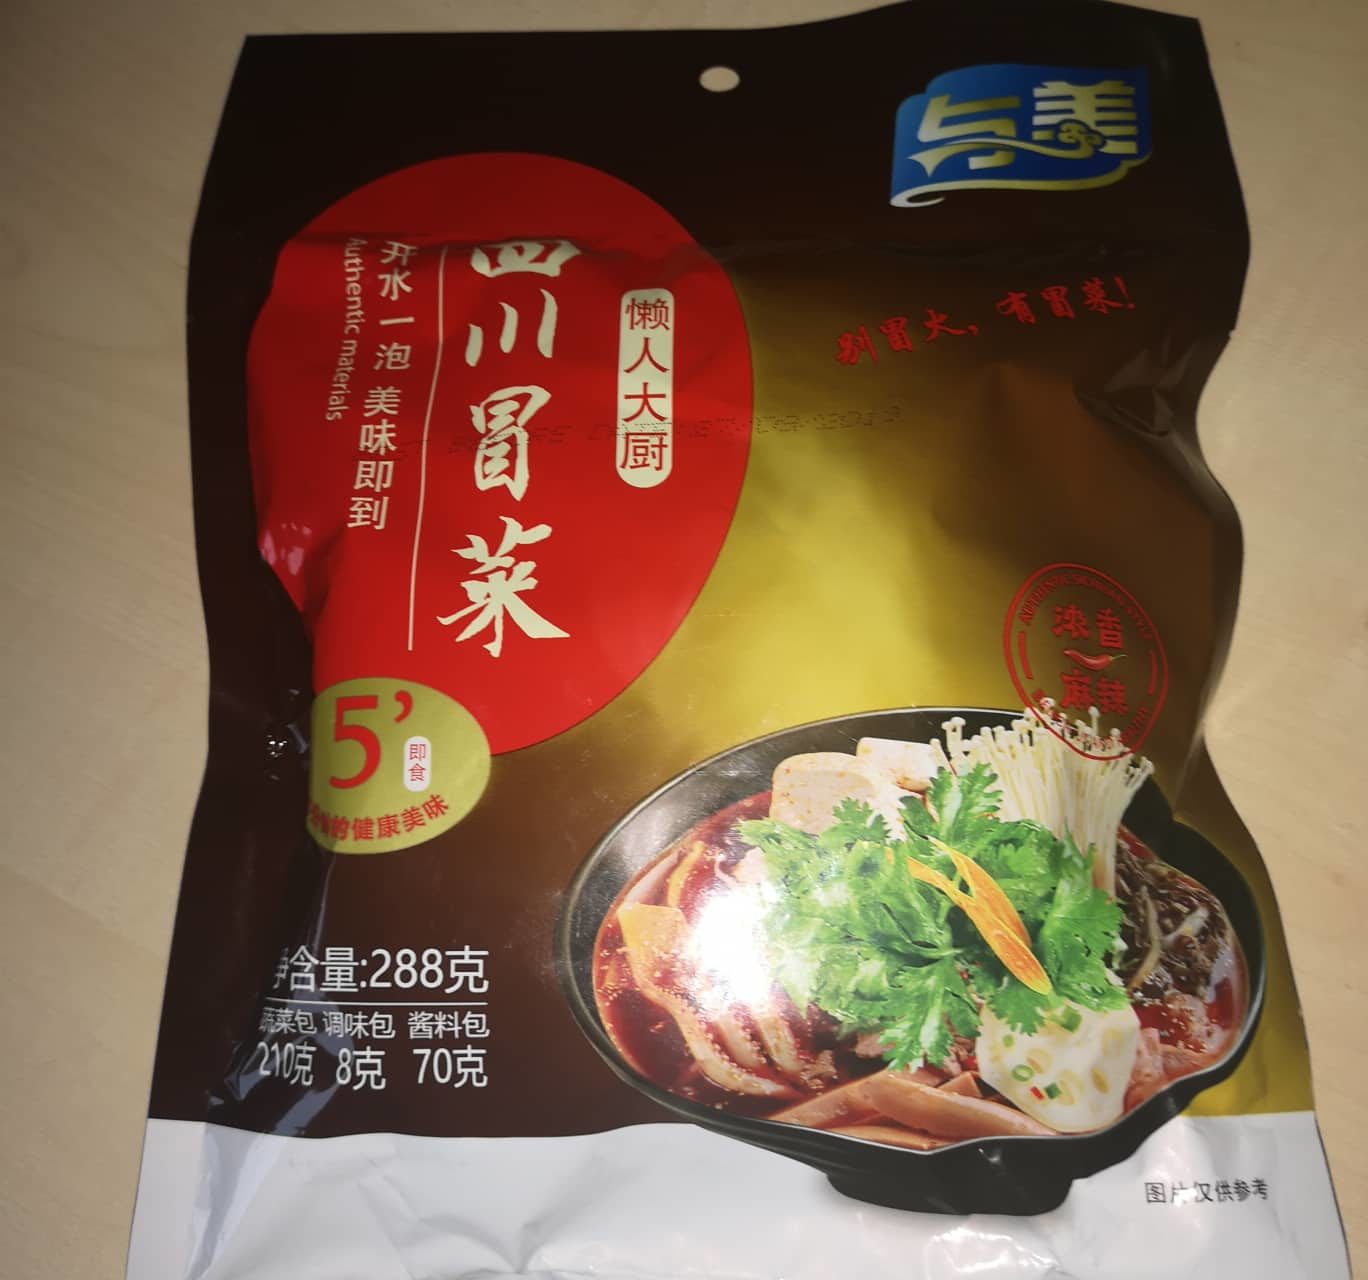 #1674: Yumei "Instant Sichuan Vegetables Hot Pot Flavour"